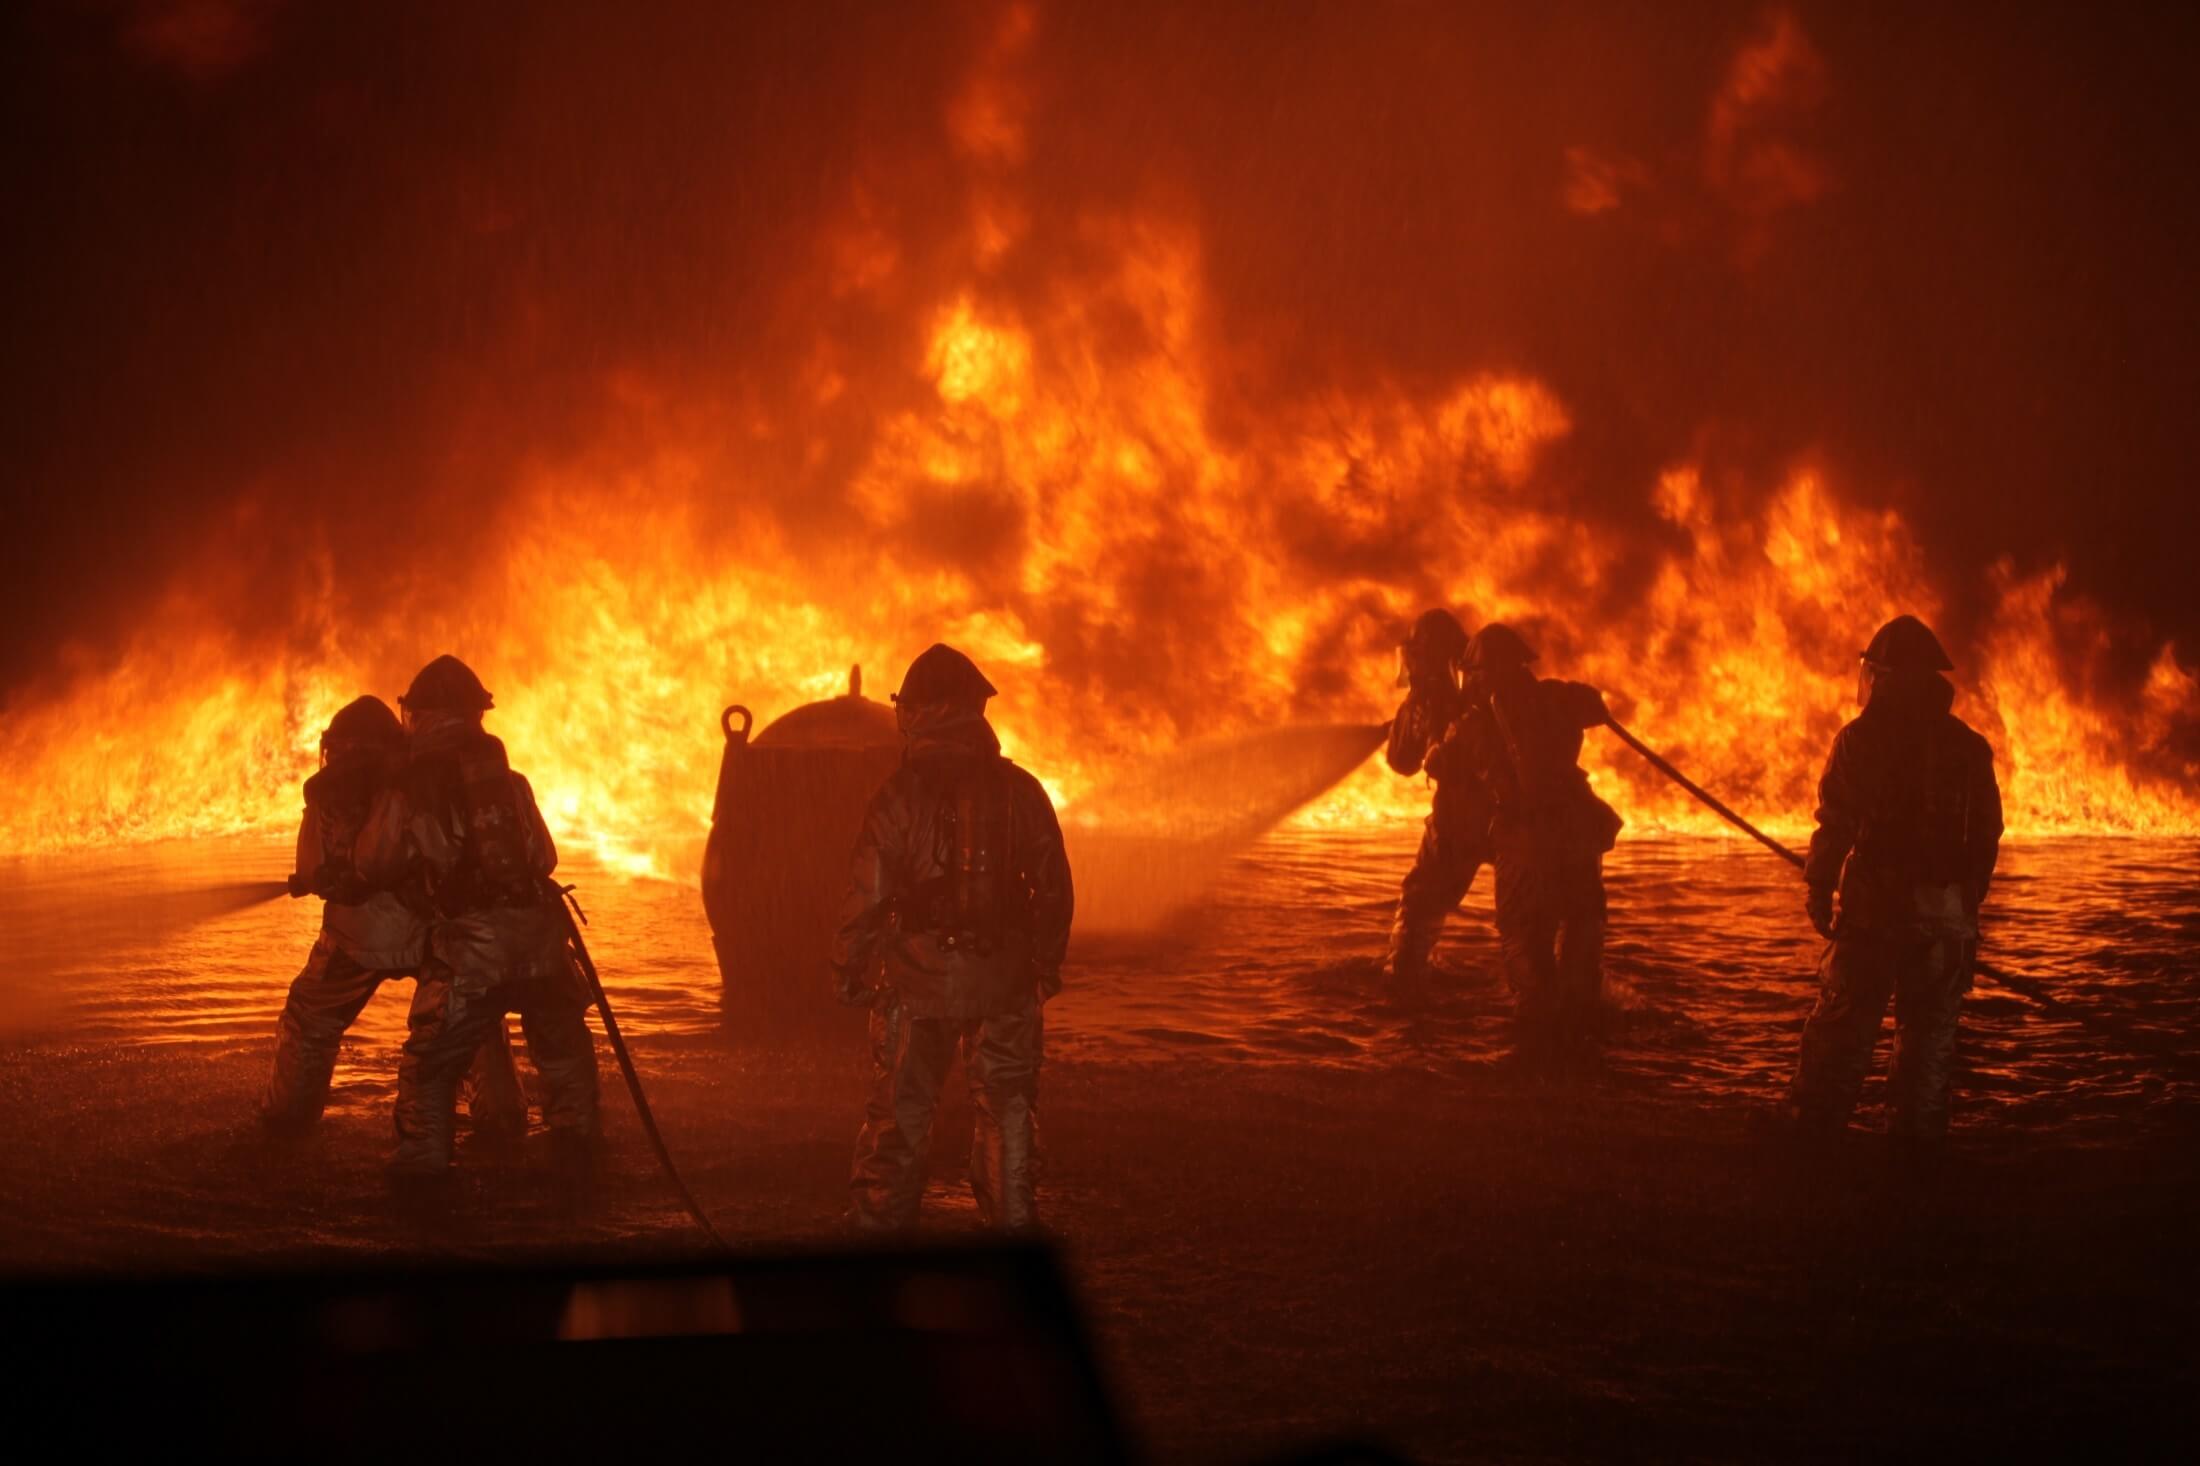 Firefighters battle a blaze